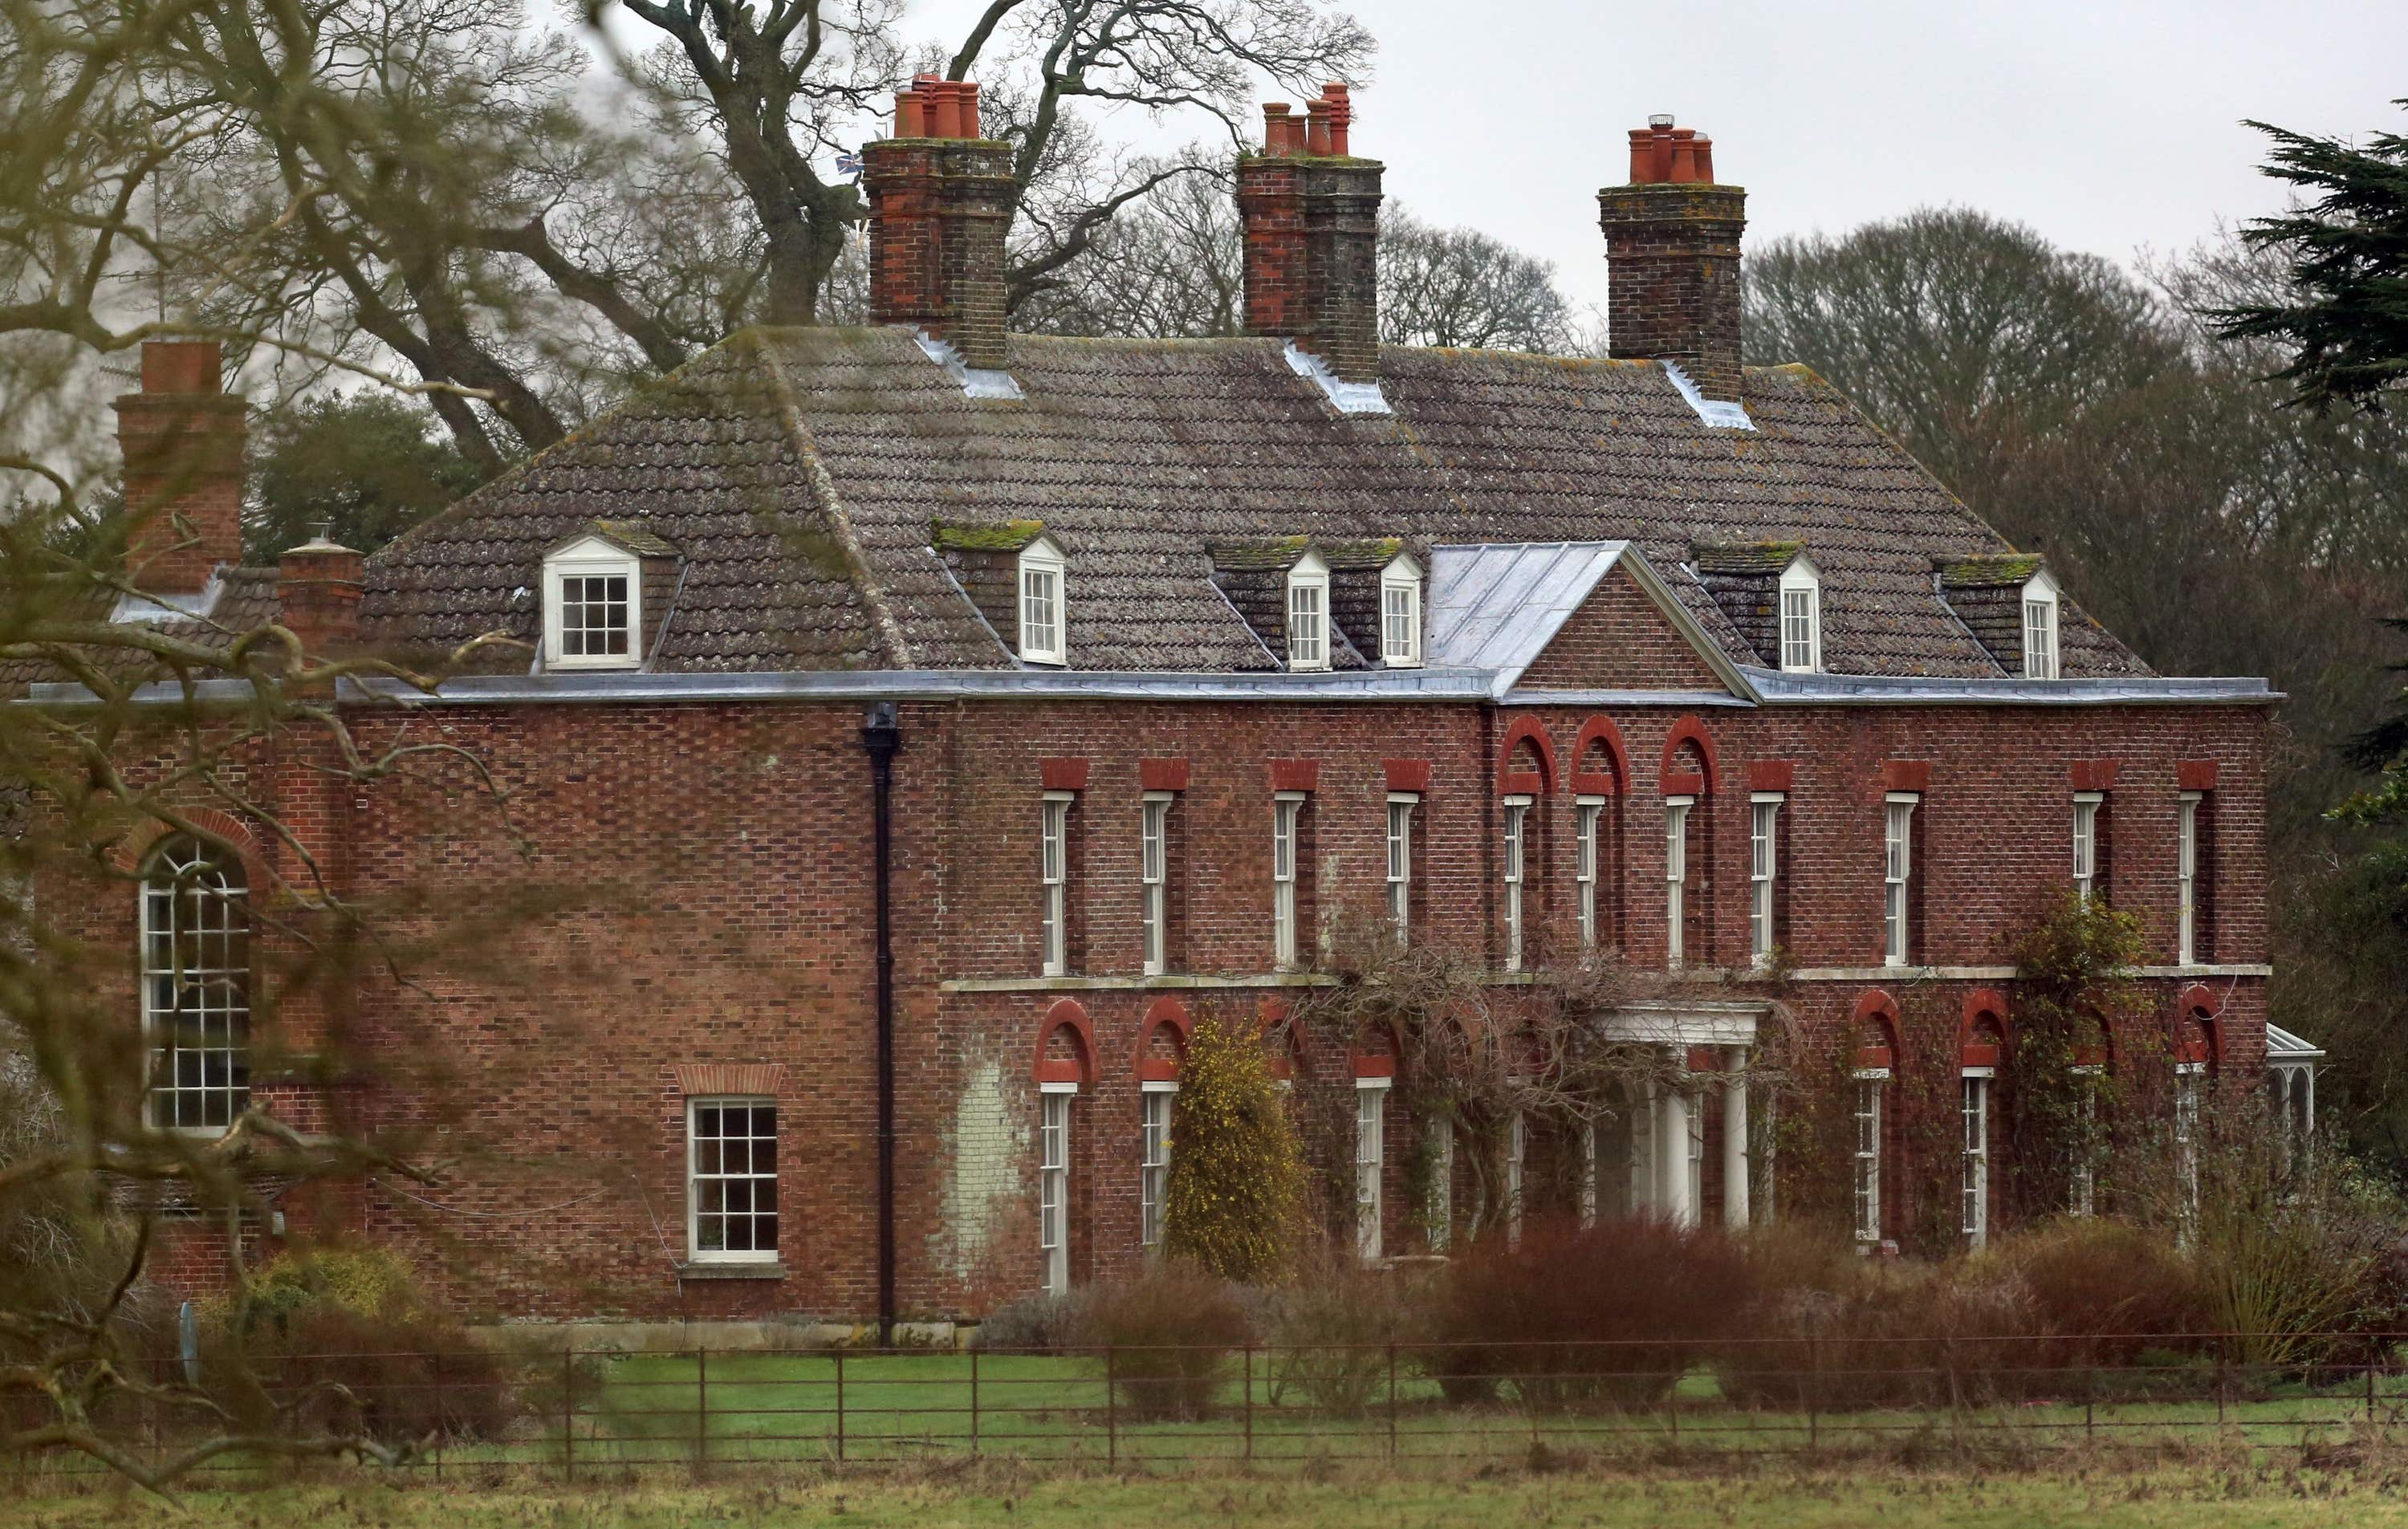 Anmer Hall on the Sandringham estate in Norfolk.